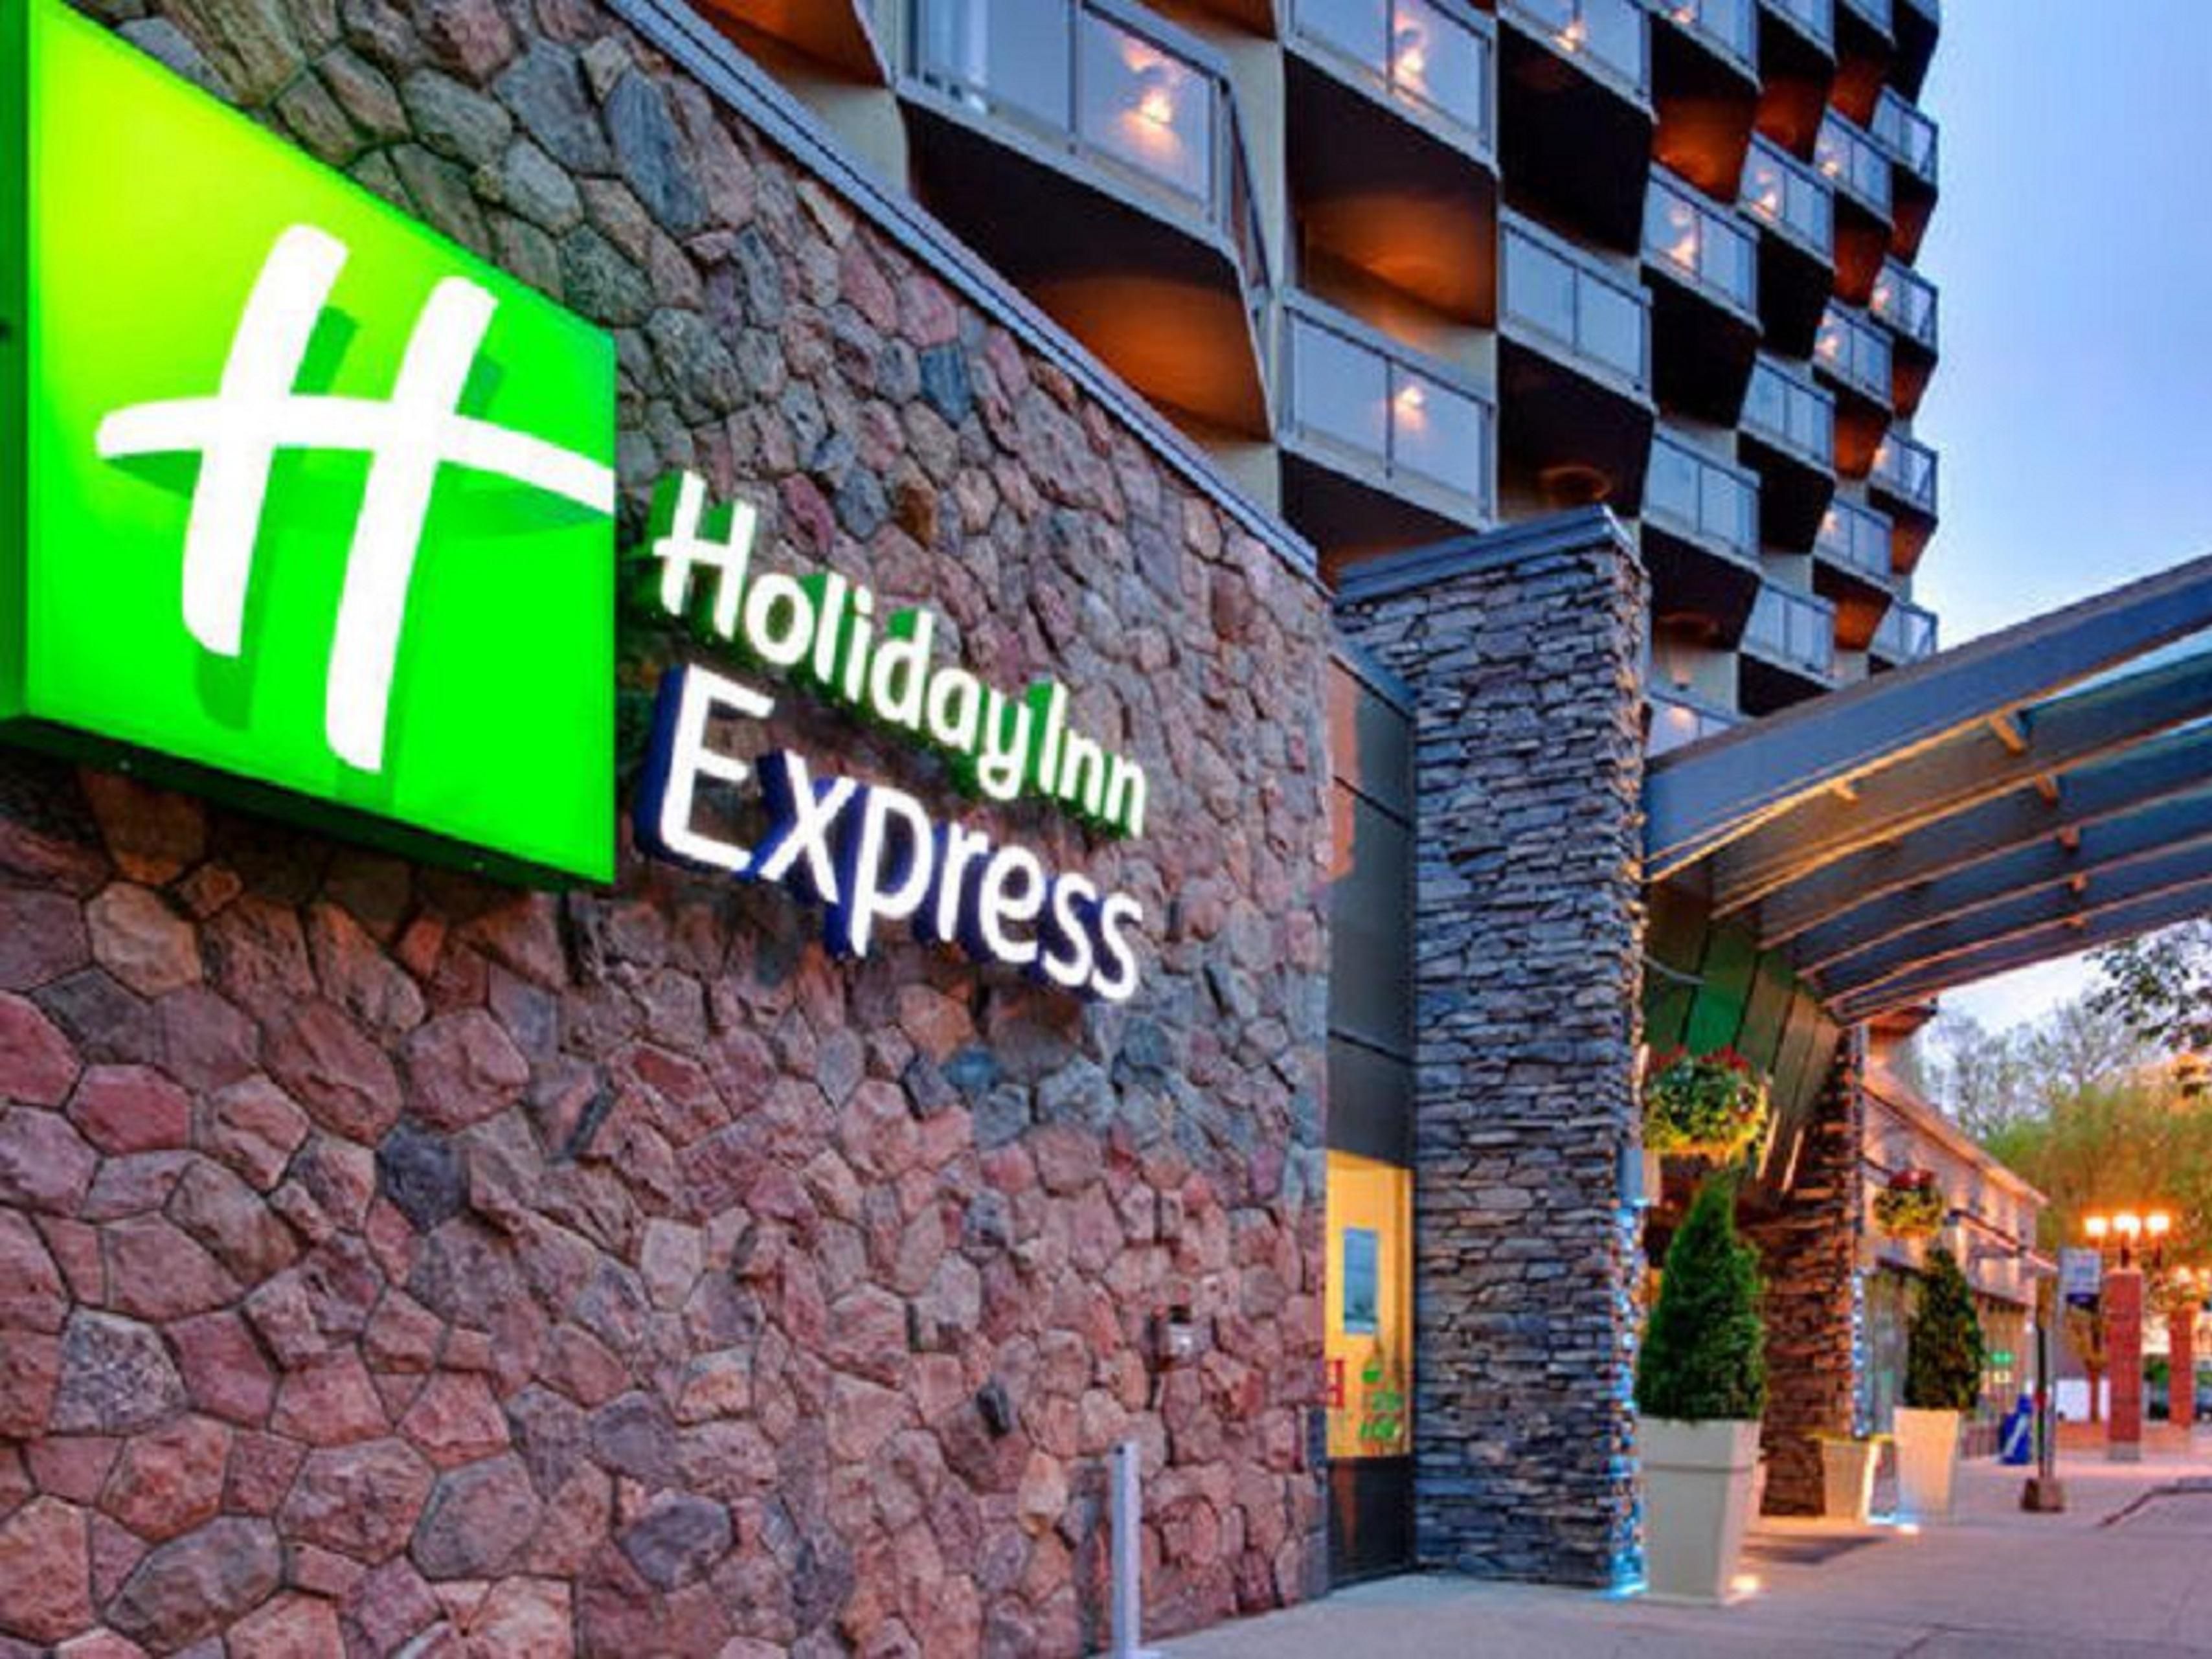 Holiday Inn Express Edmonton 3554197555 4x3